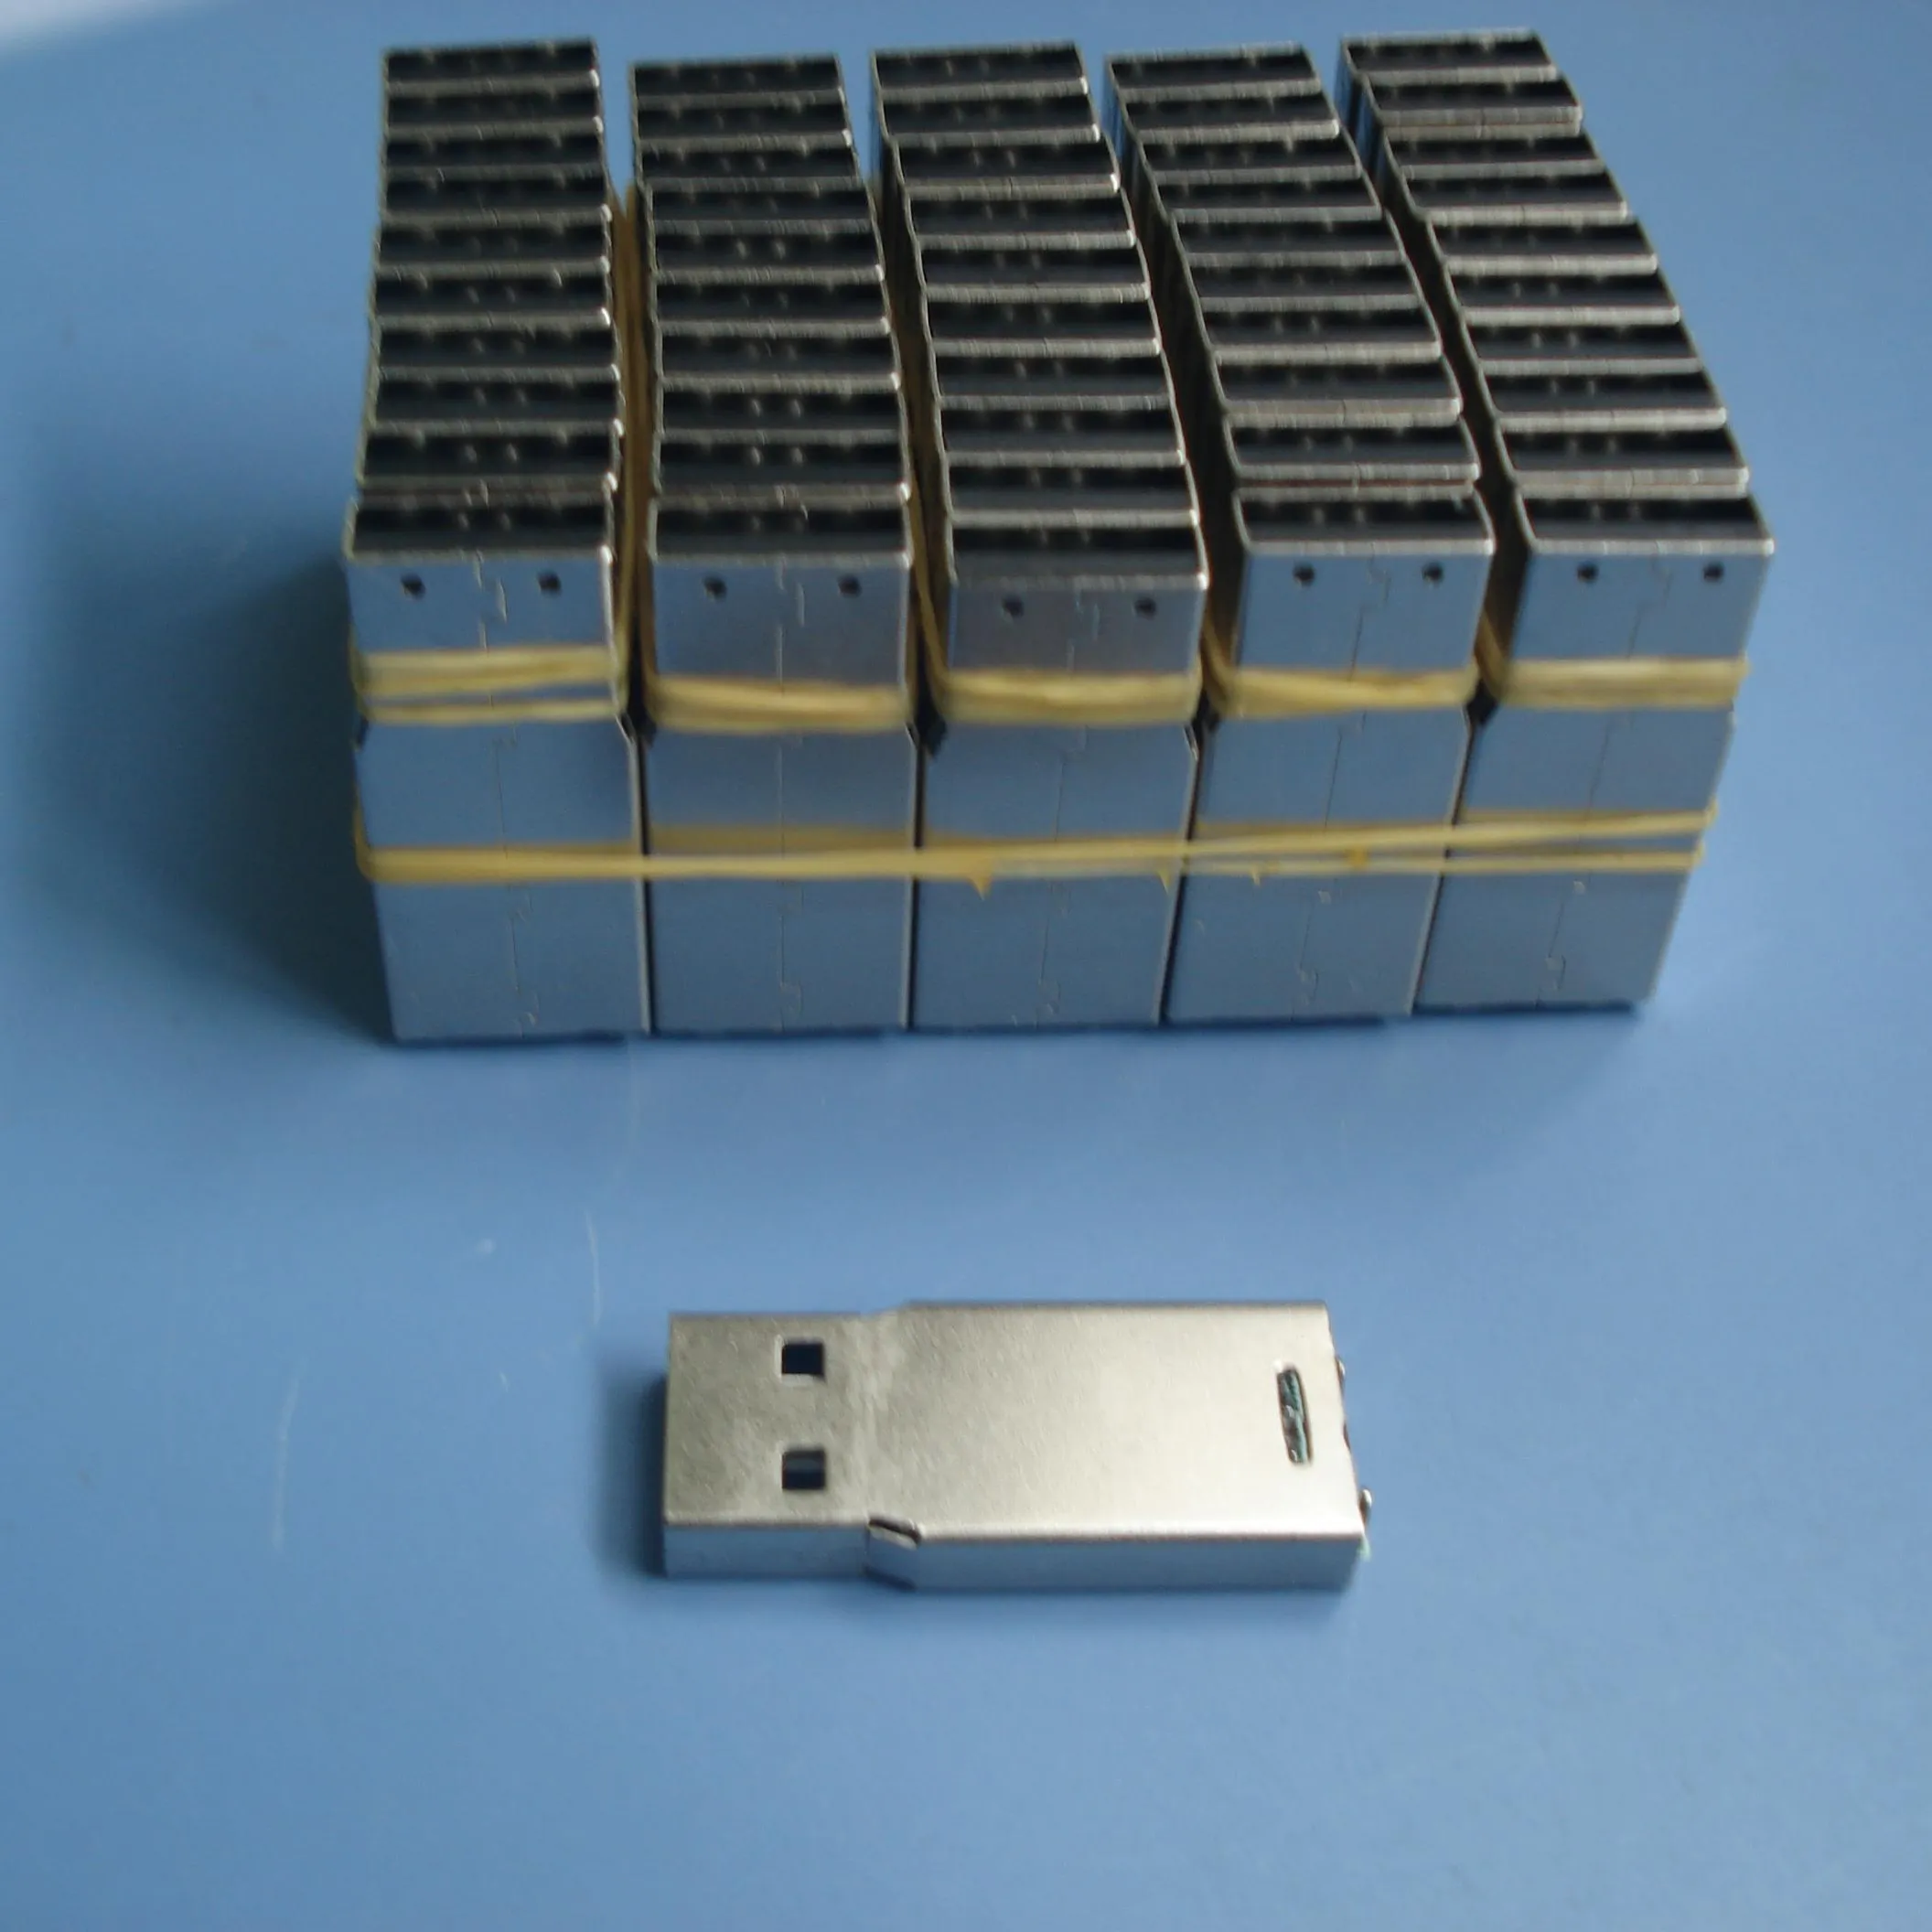 Precio de fábrica usb flash drive chip1gb/2 gb/4 gb/8 gb/16 gb/32 gb sin caso